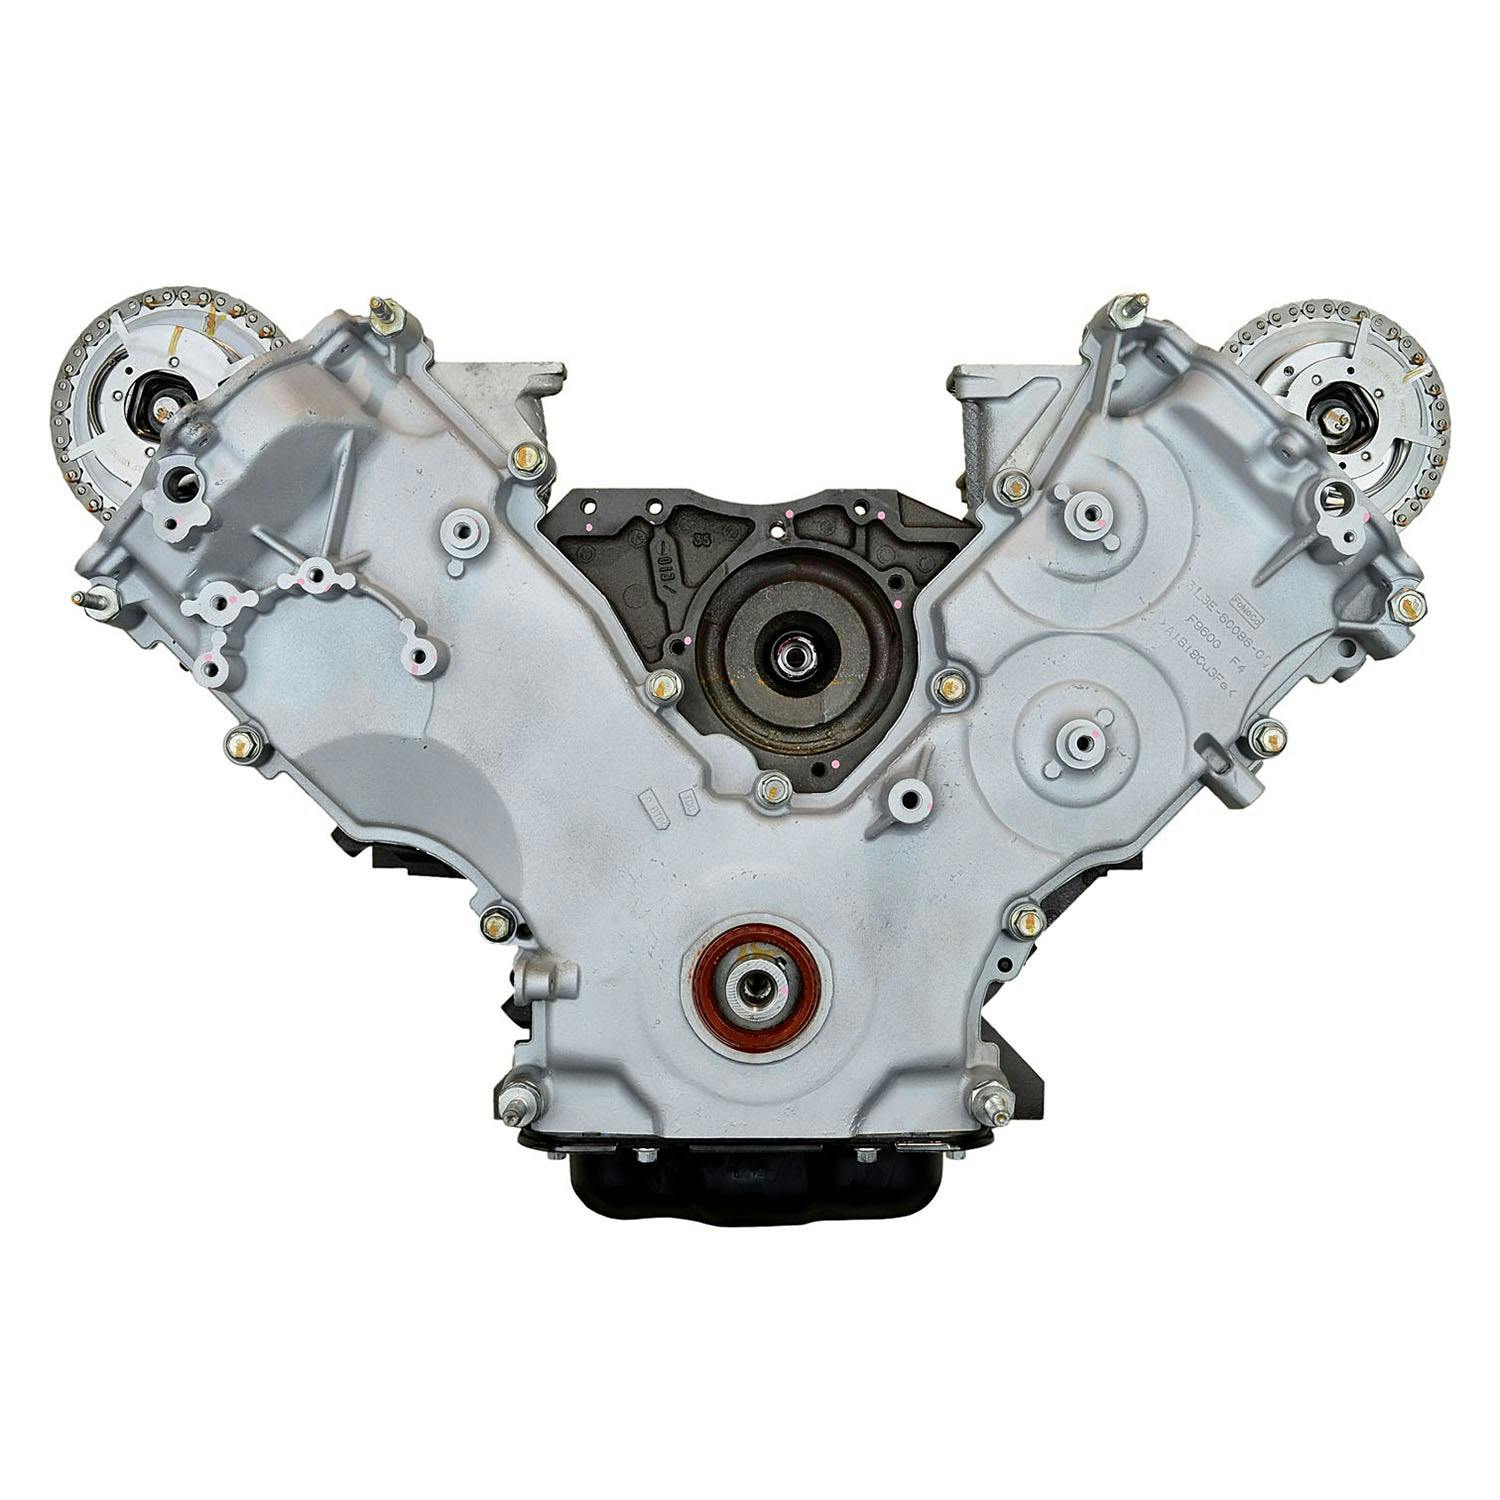 5.4 Liter V8 Engine for 2006-2014 Ford Family SUVs and Trucks